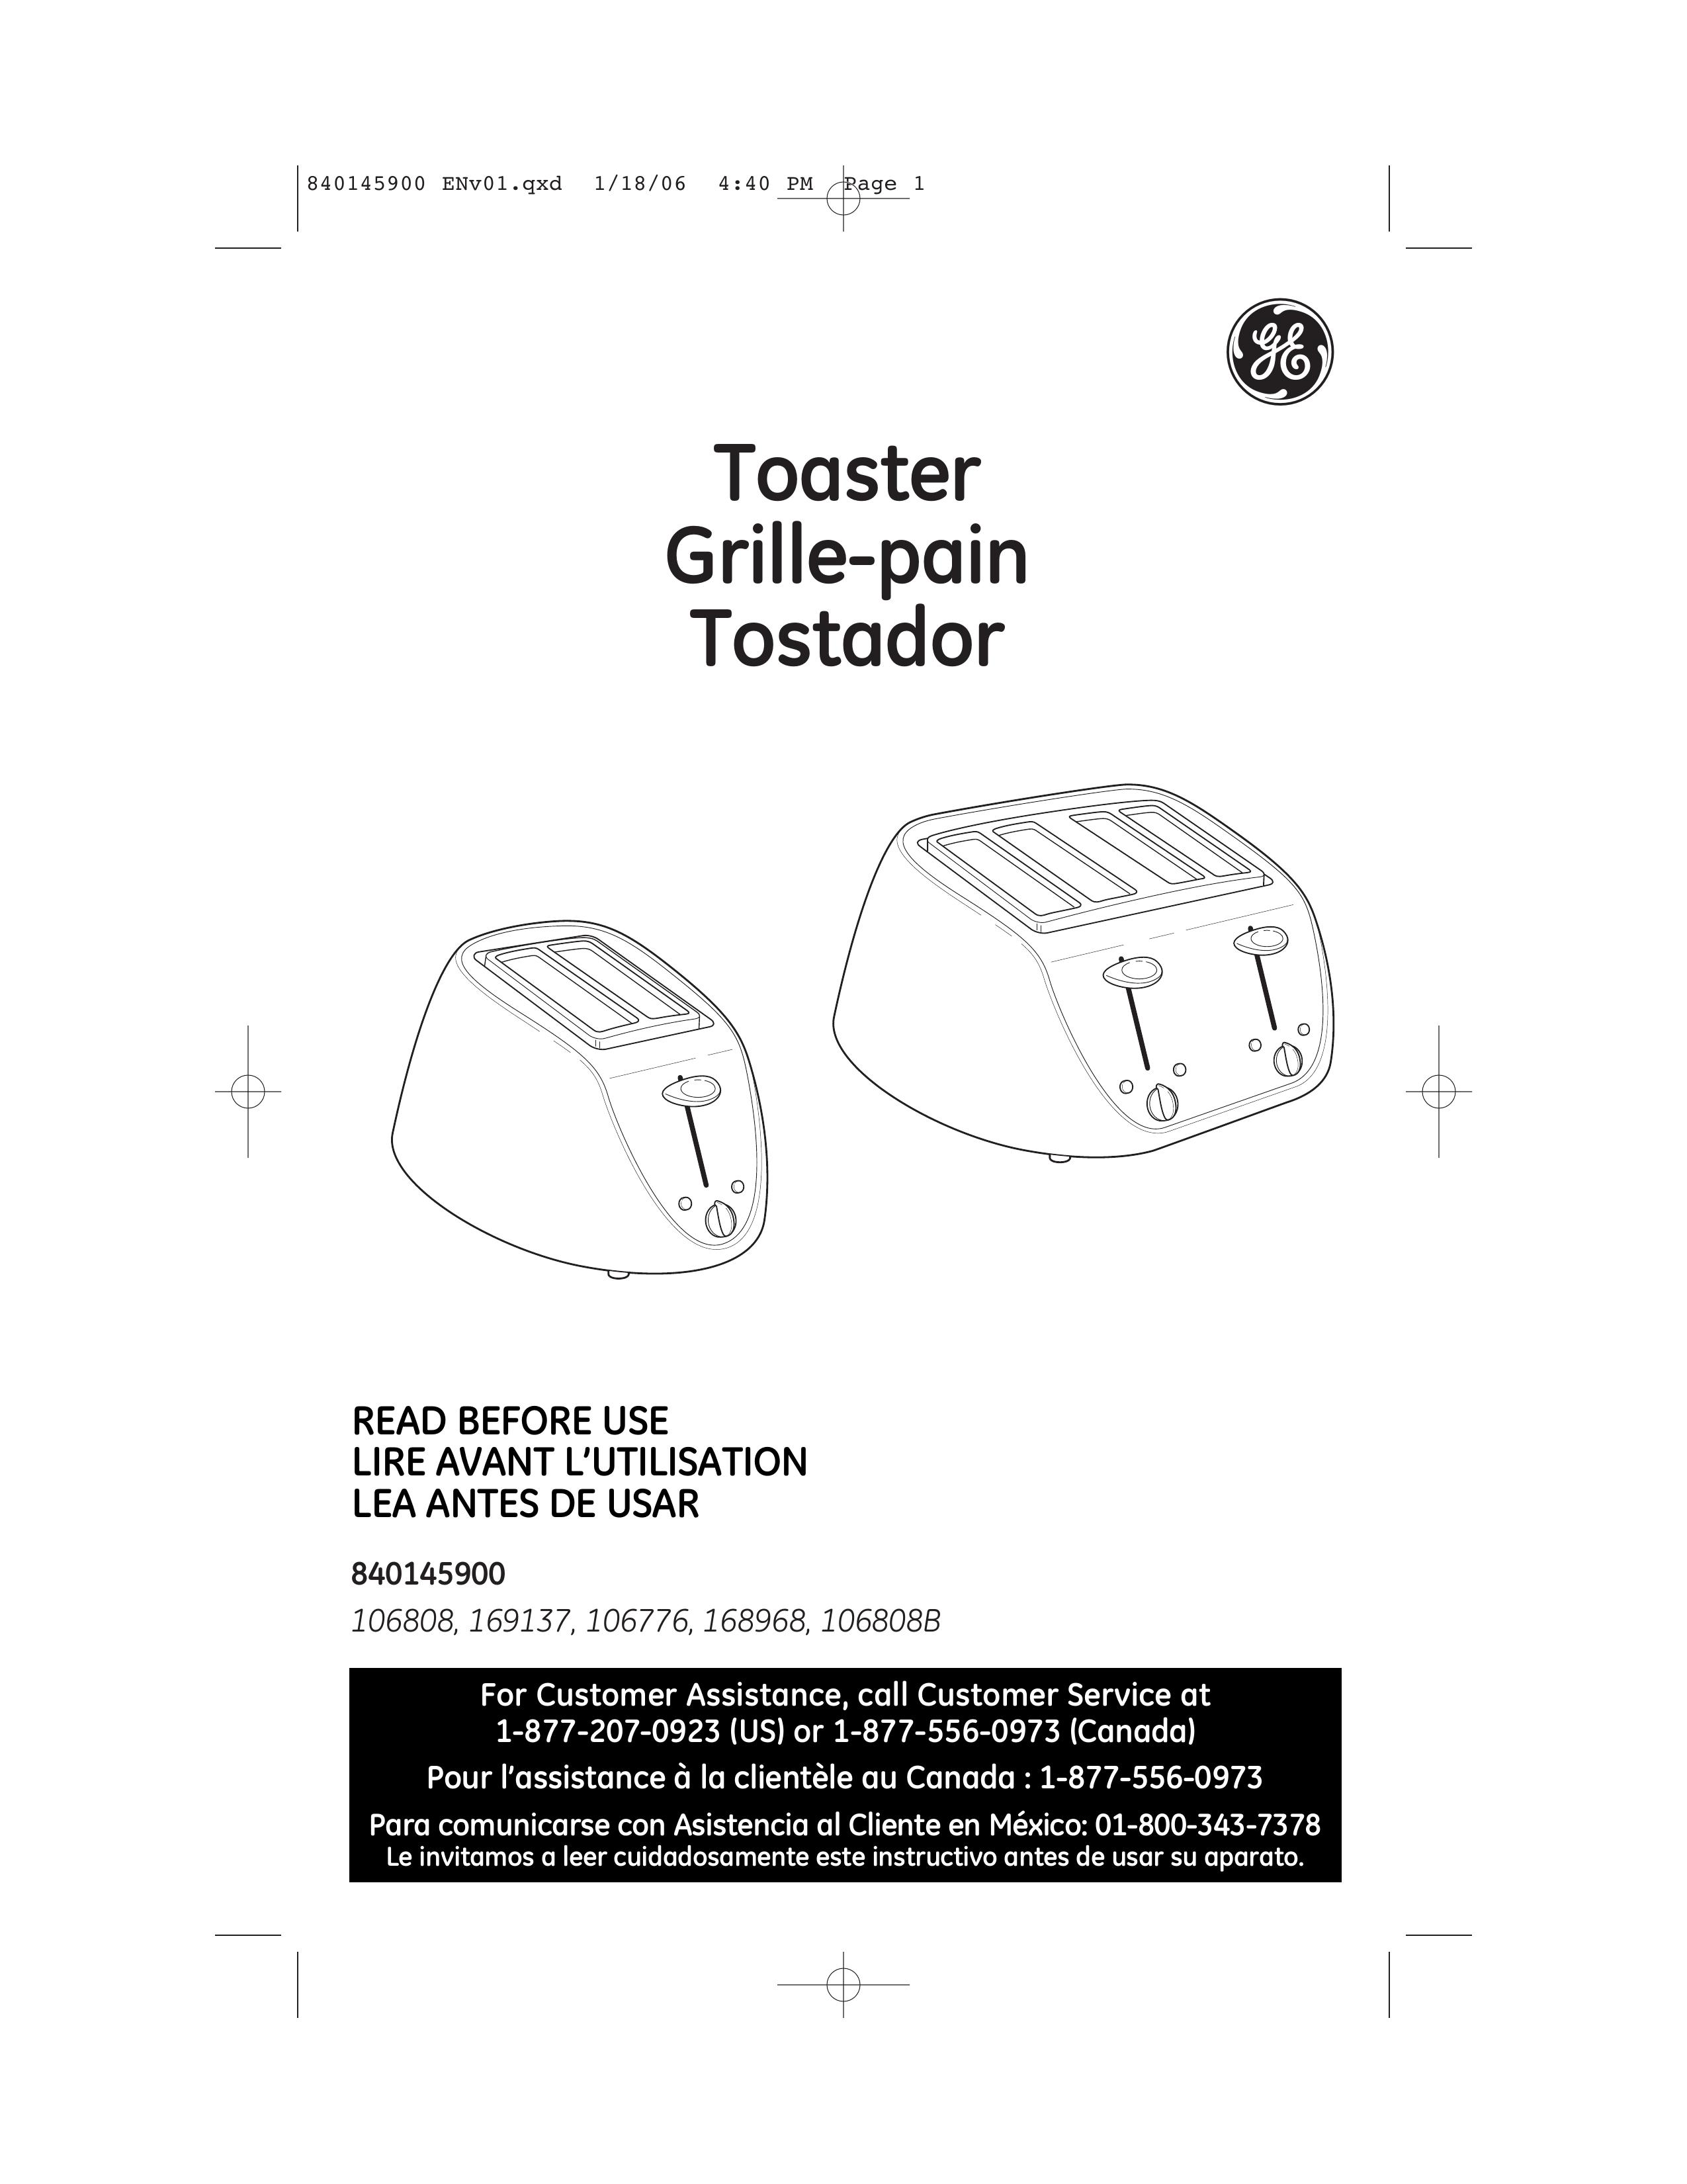 GE 106776 Toaster User Manual